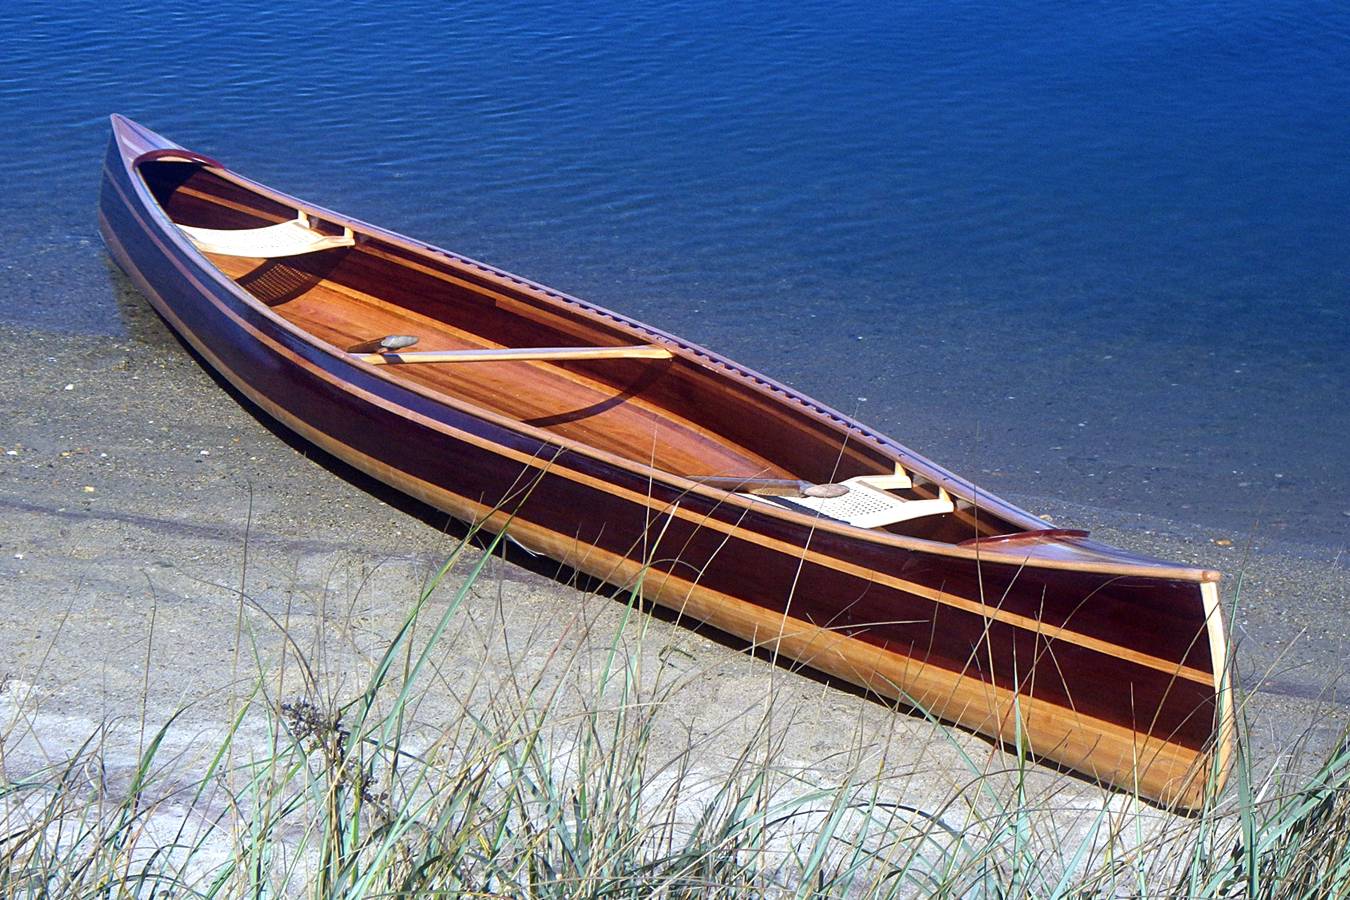 The Mystic River tandem canoe on a beach